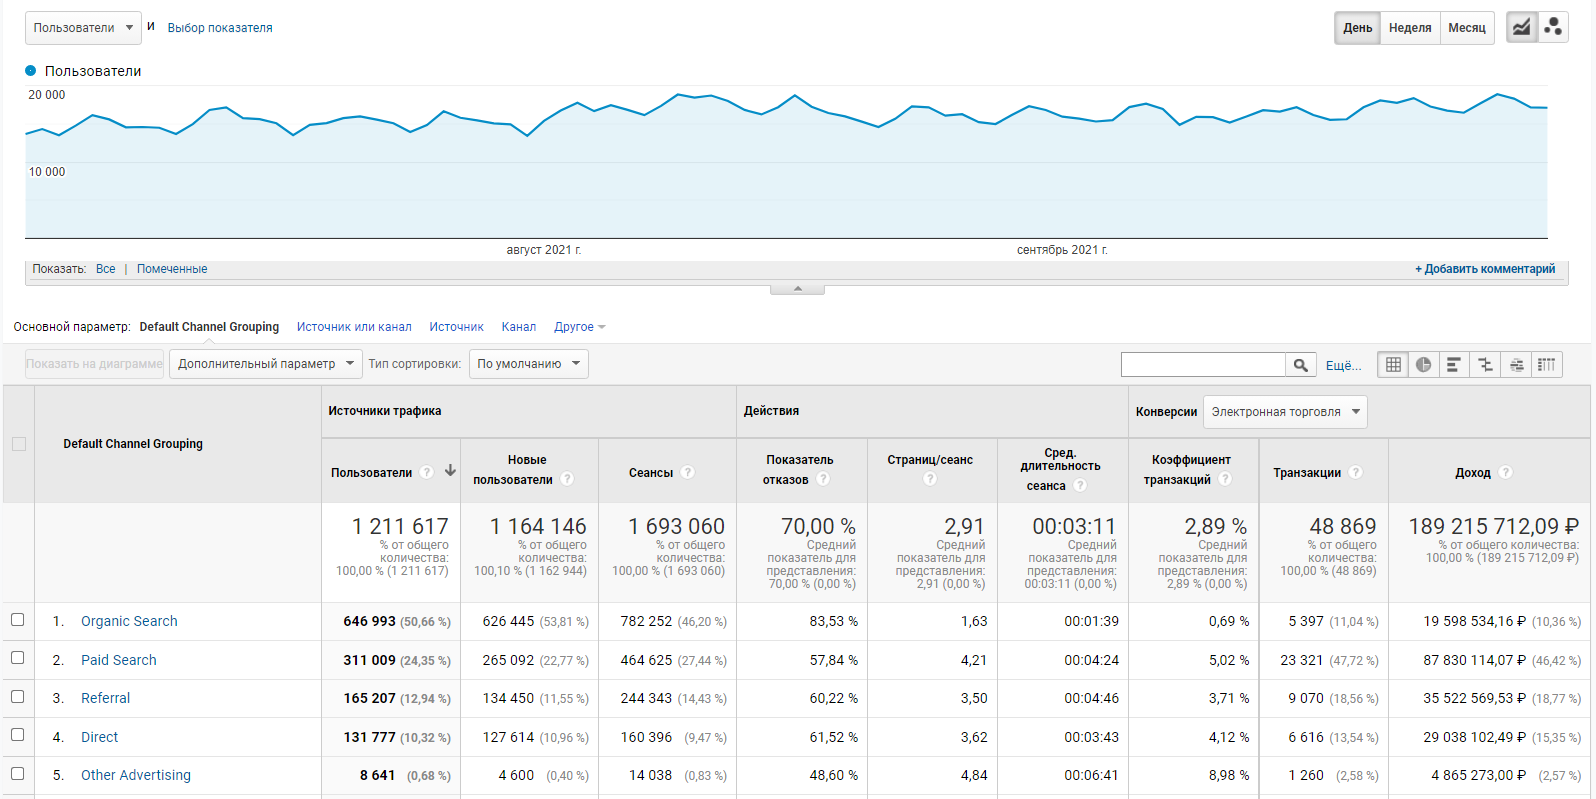 Отчет Канал в Google Analytics